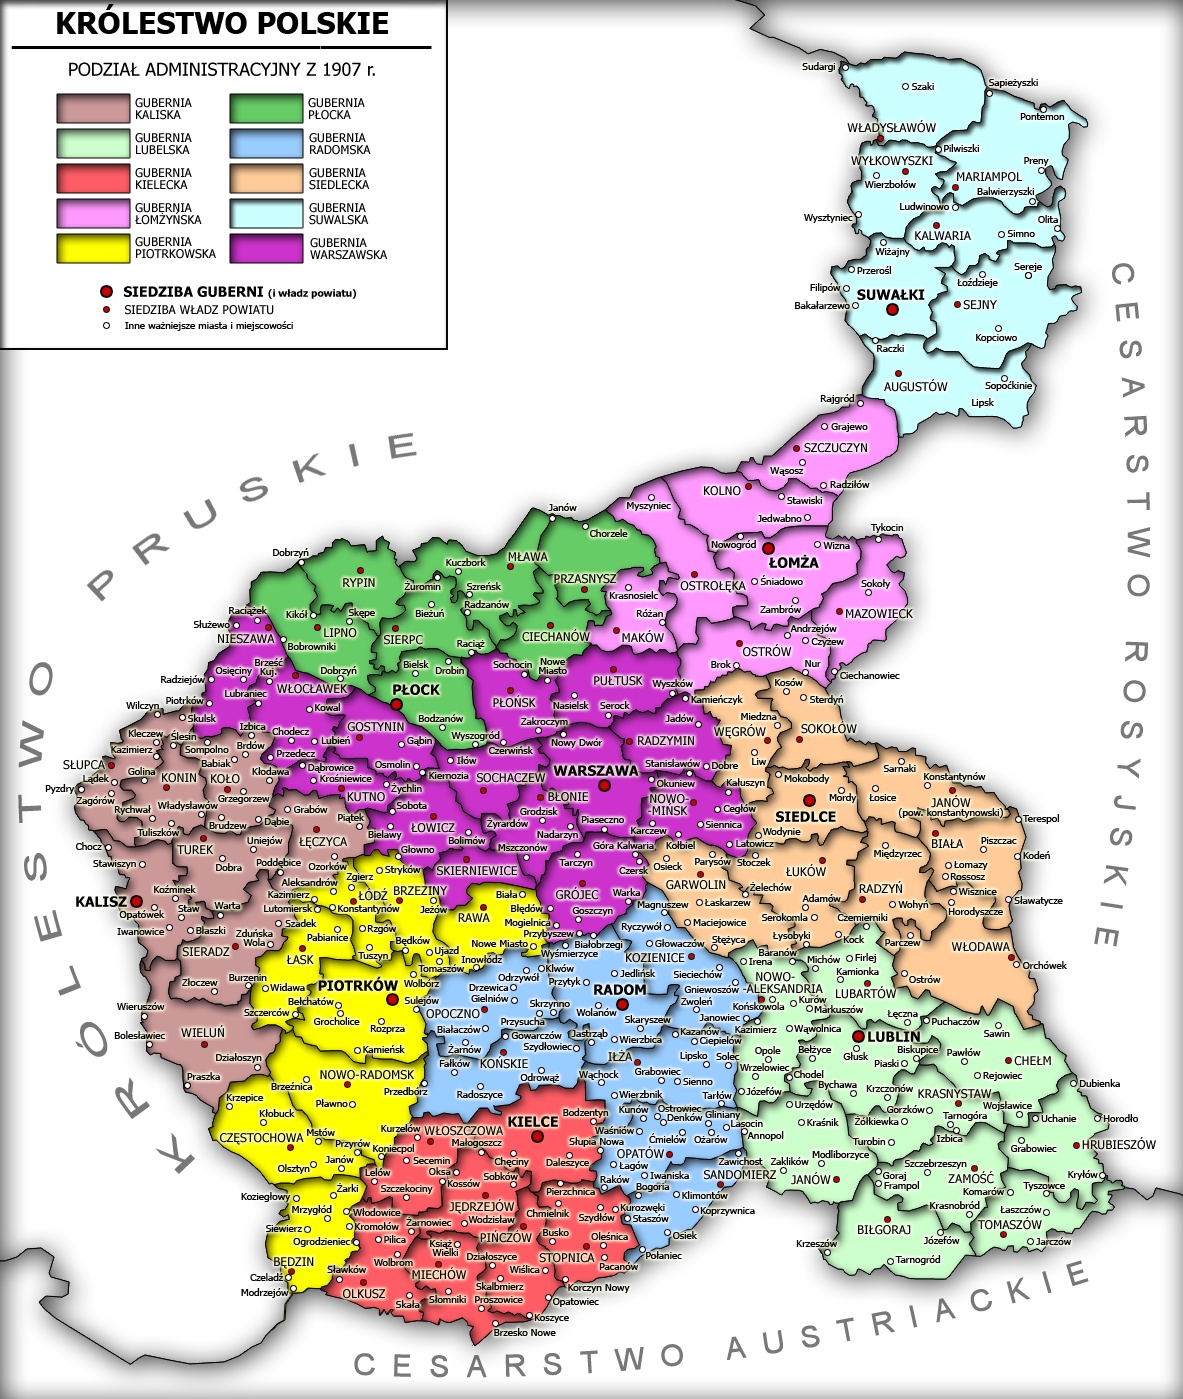 Mapa przedstawiająca Królestwo Polskie i jego podział administracyjny w 1907 r.